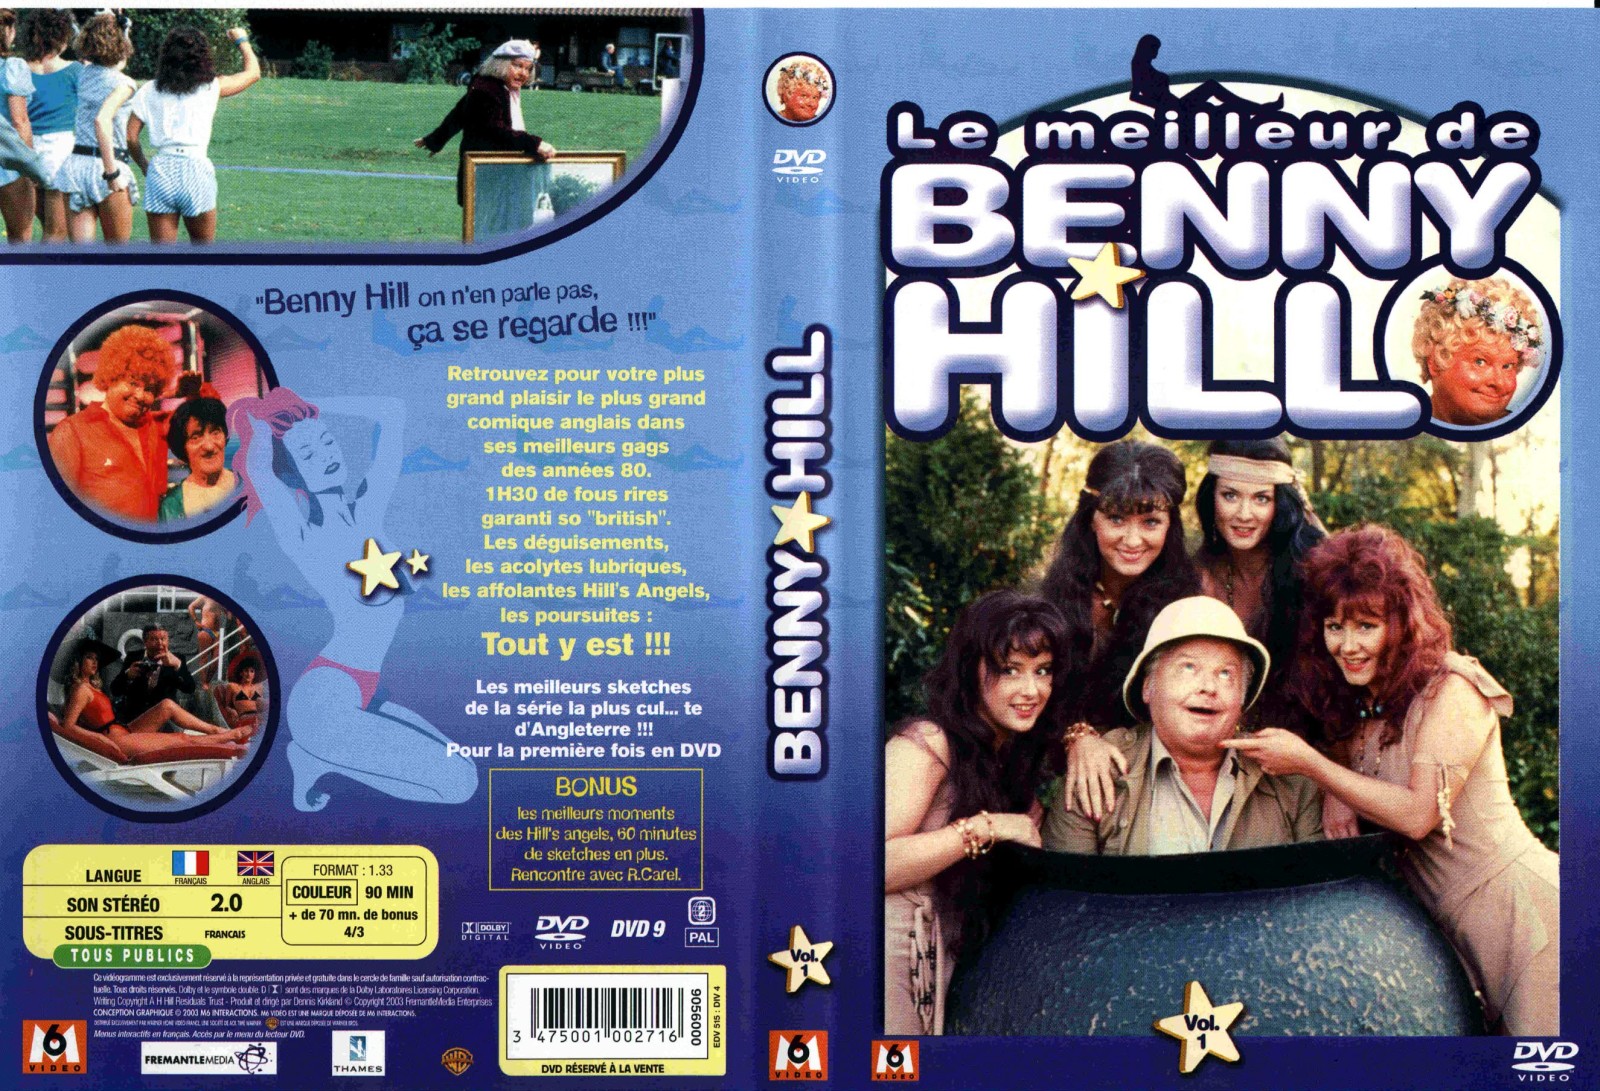 Jaquette DVD Benny Hill - Le meilleur de Benny Hill vol 1